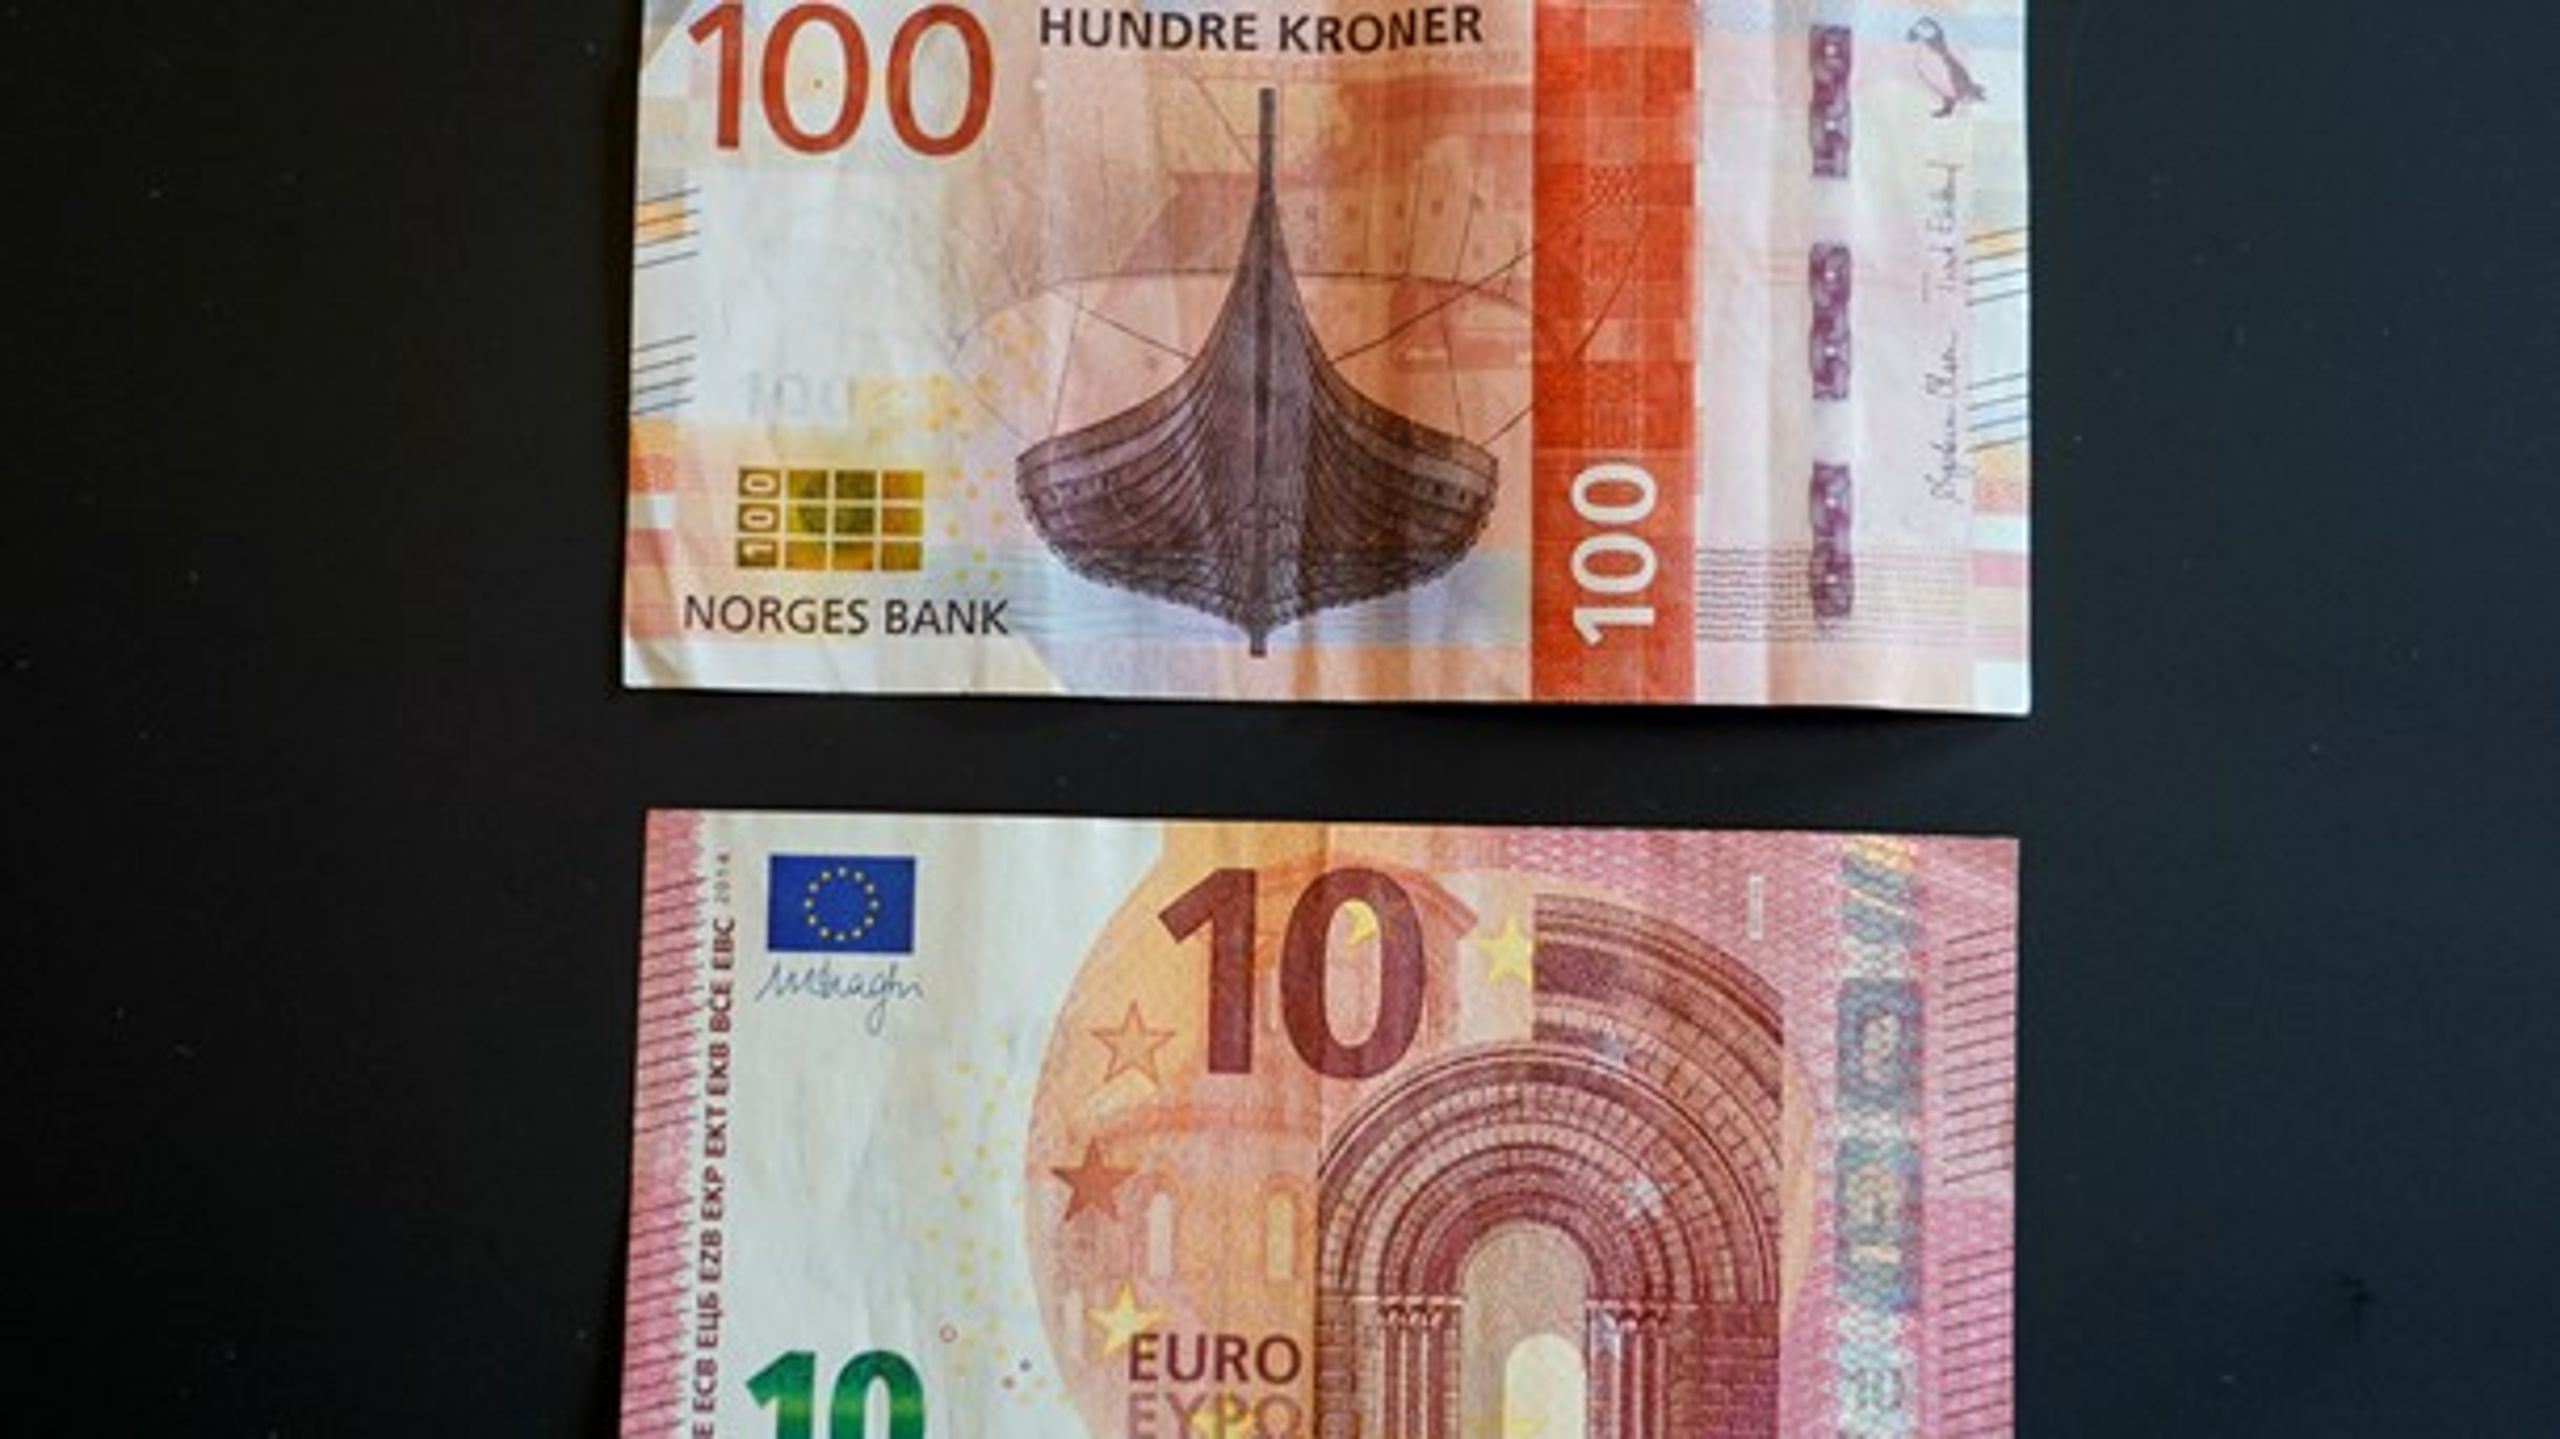 Norge er ikke tjent med å bytte ut kronen mot euro i lommeboken, mener Ungdom mot EU.